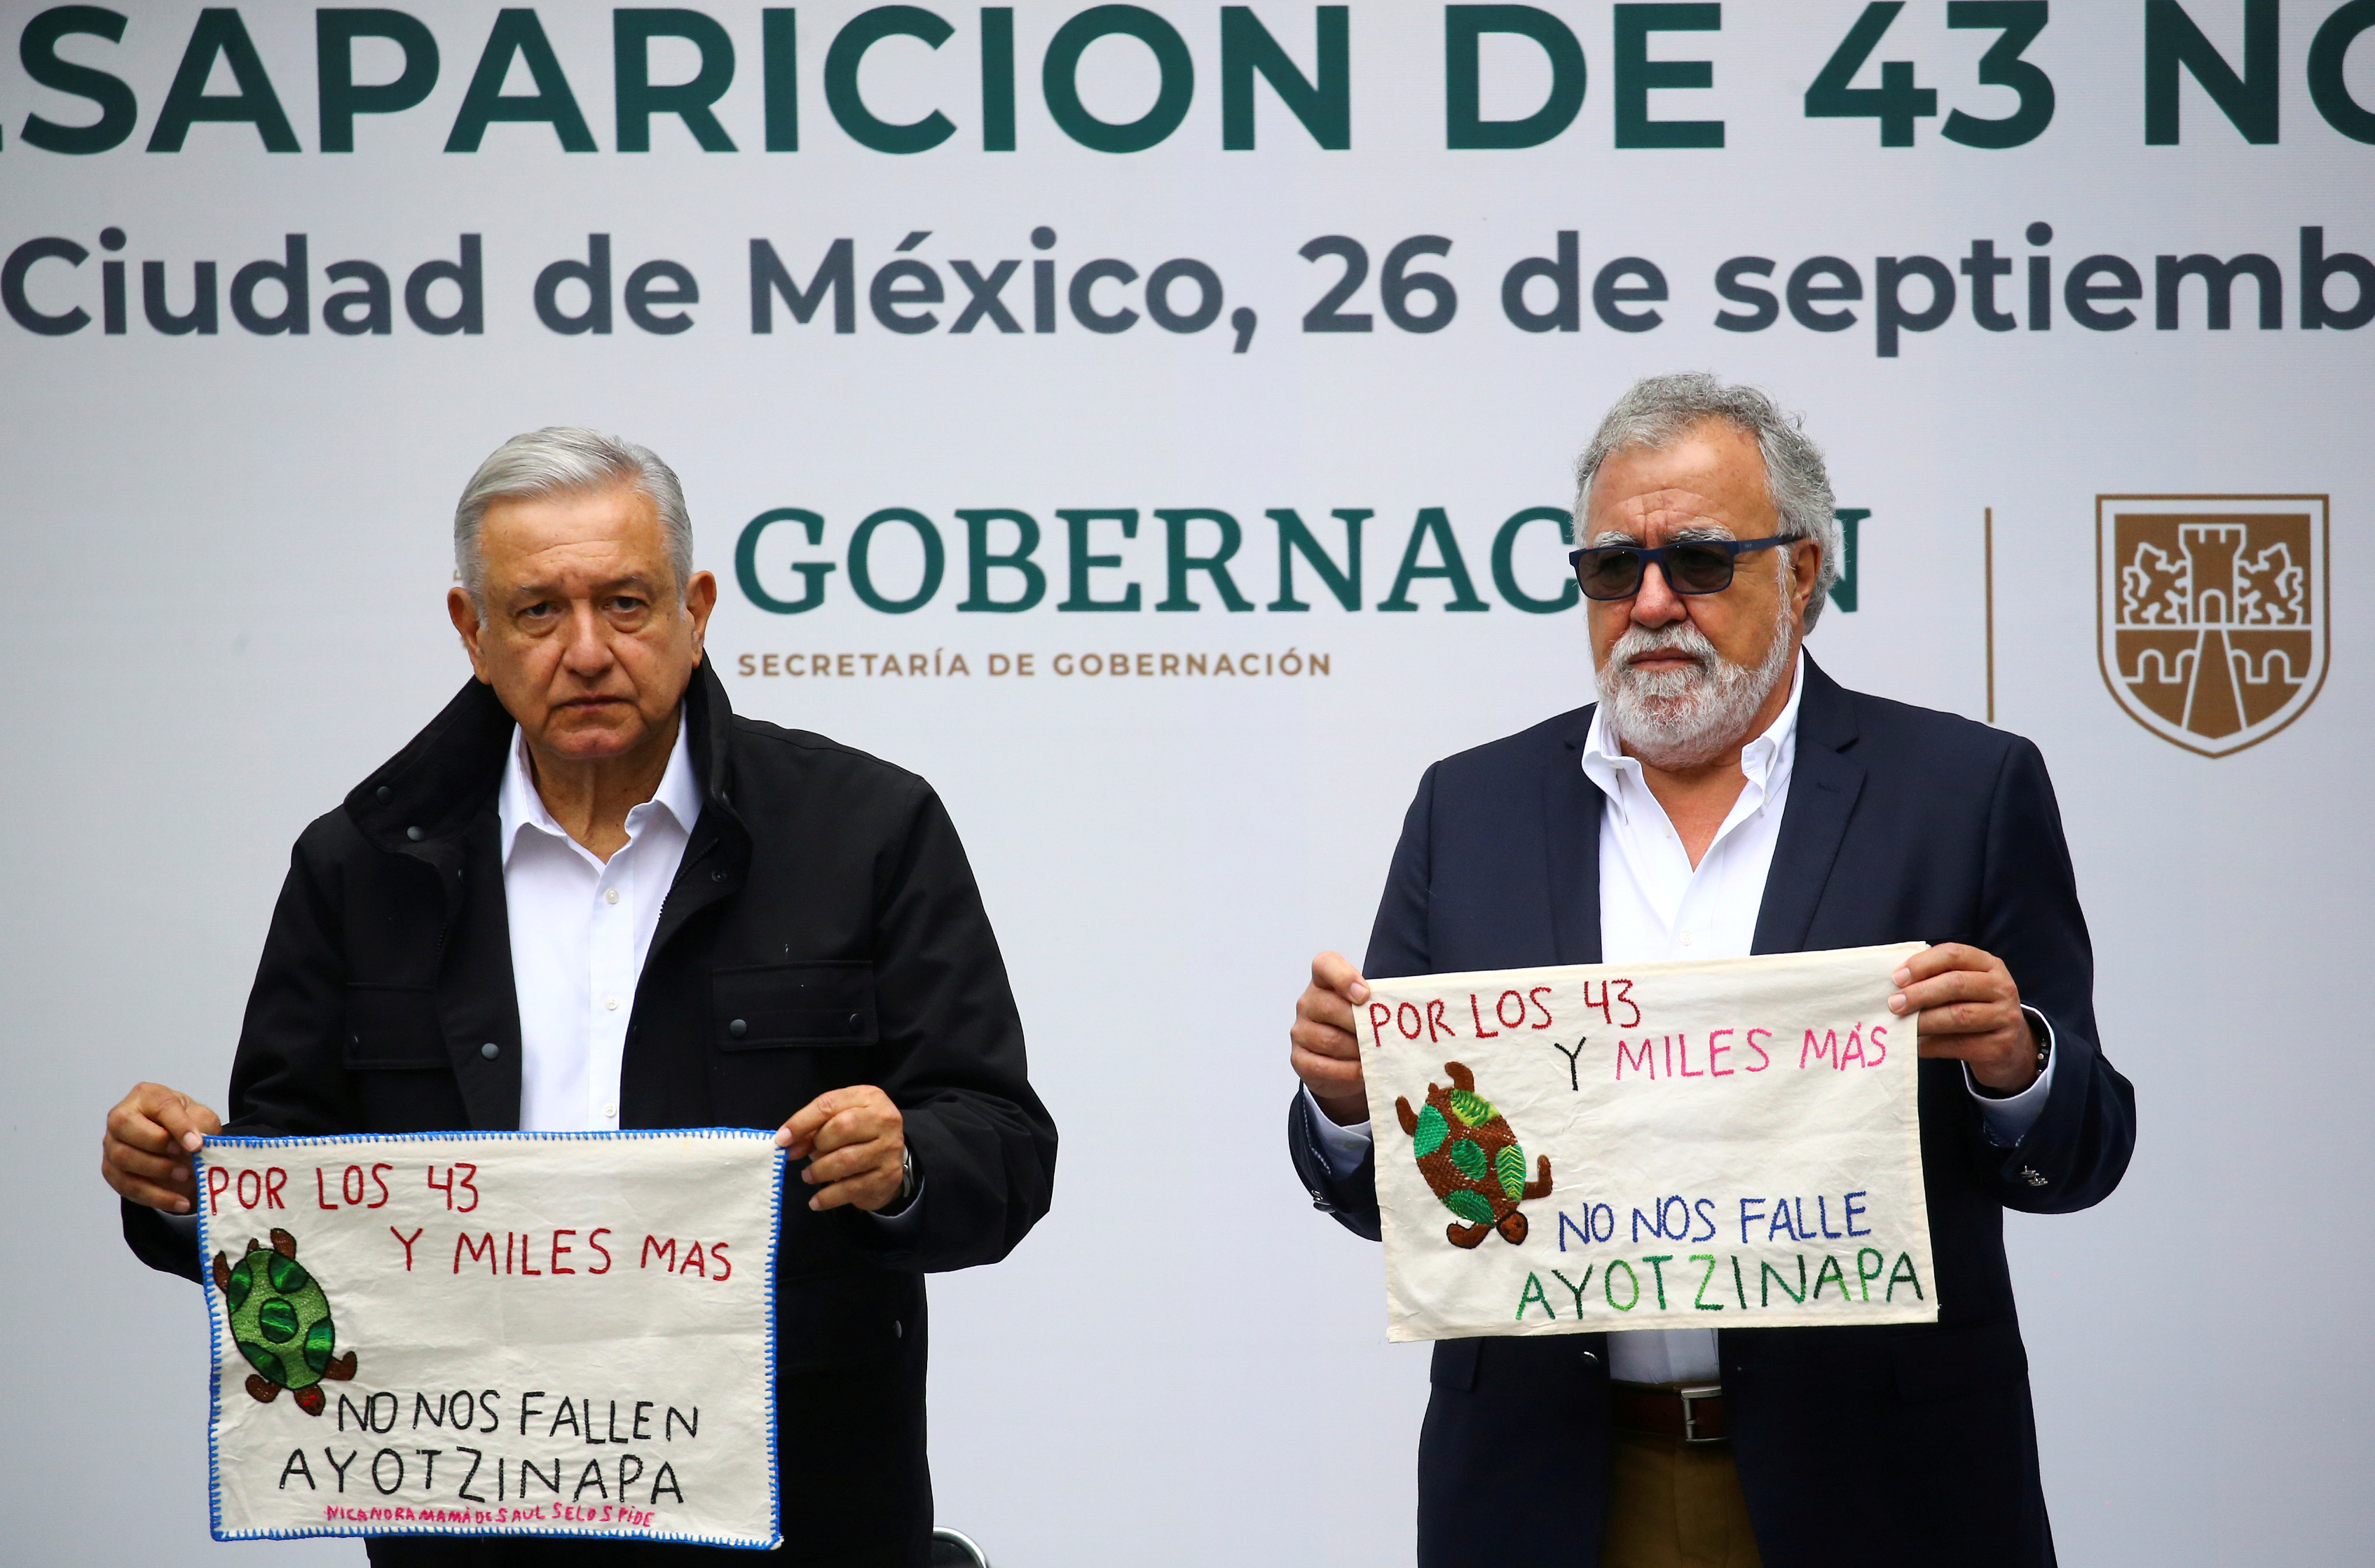 Al cumplirse el sexto aniversario de la desaparición de los 43 normalistas de Ayotzinapa, el presidente Andrés Manuel López Obrador aseguró que habría justicia y reveló que ya había órdenes de aprehensión contra algunos militares que presuntamente habrían participado en los hechos (Foto de archivo: REUTERS/Edgard Garrido)